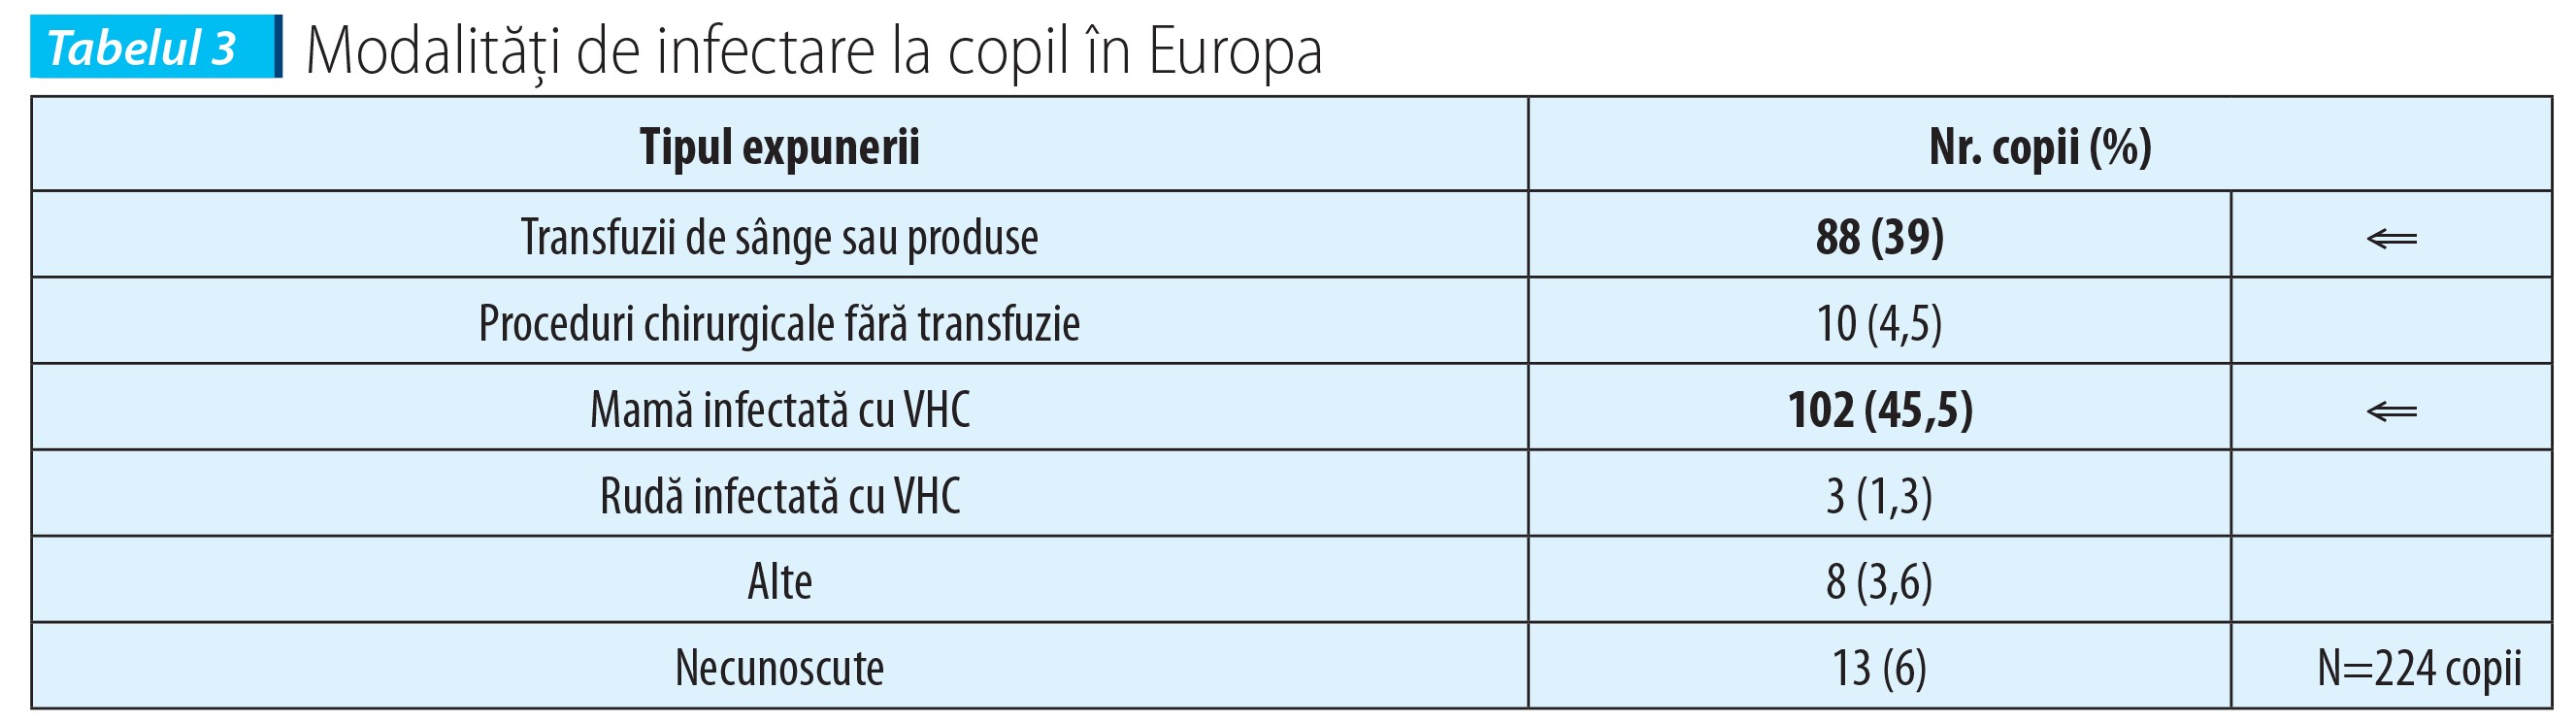 Tabelul 3 Modalități de infectare la copil în Europa